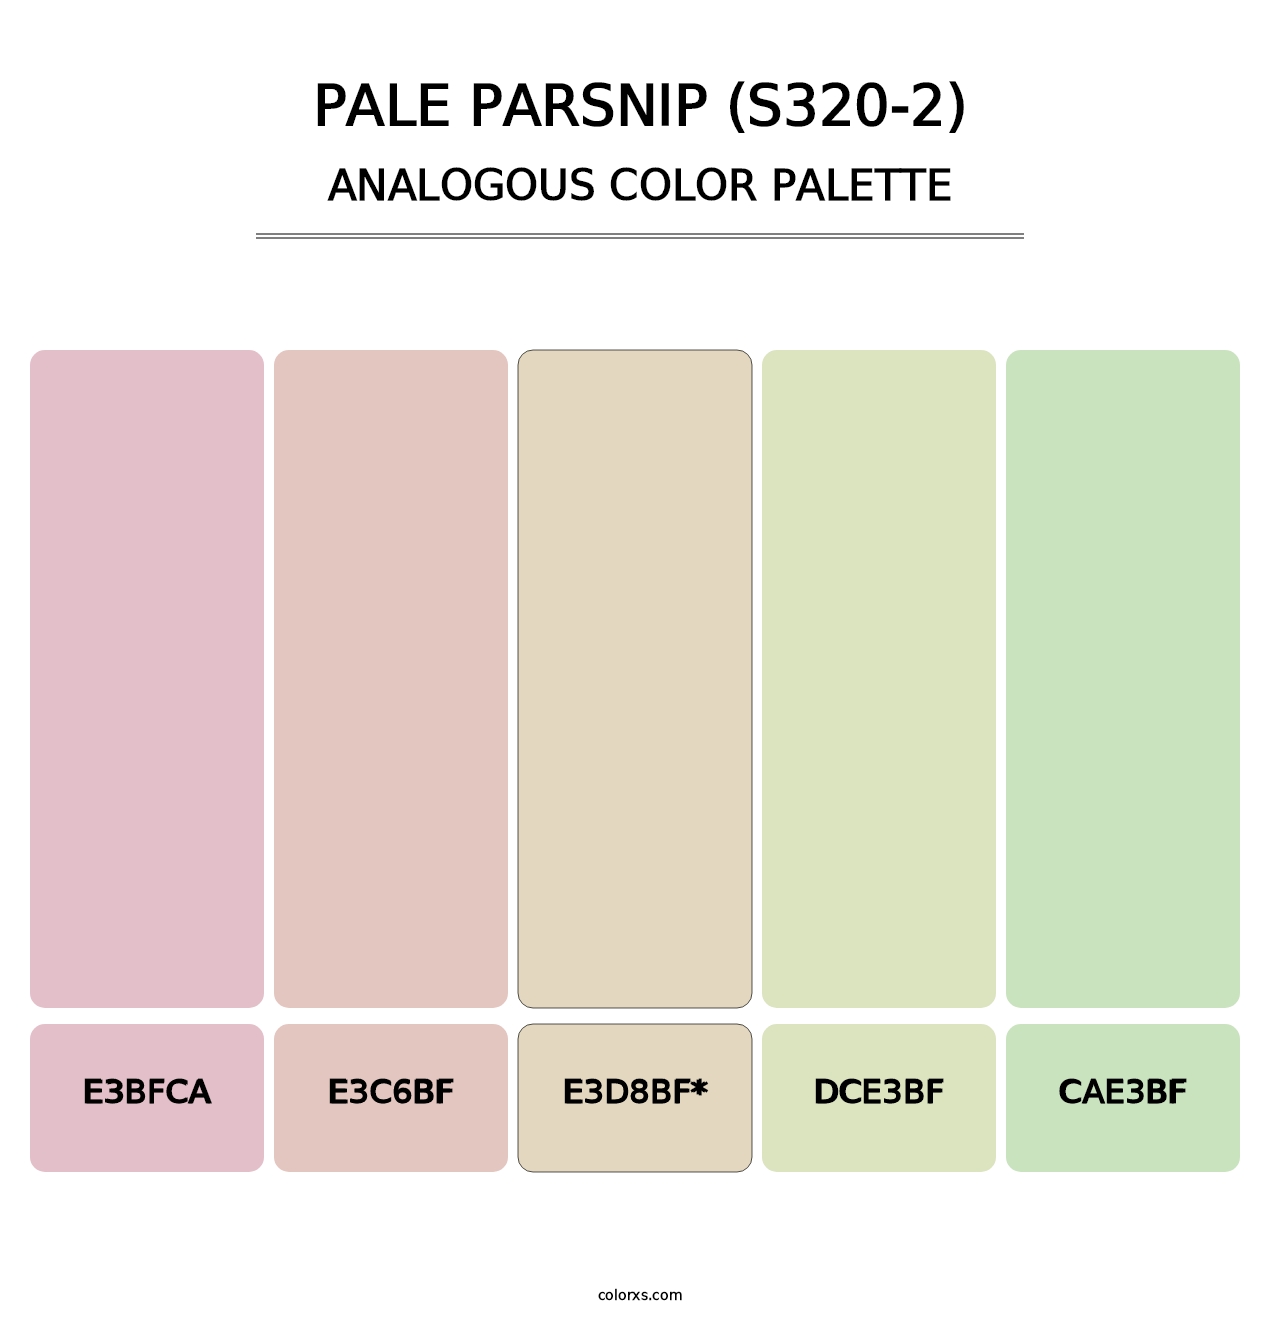 Pale Parsnip (S320-2) - Analogous Color Palette